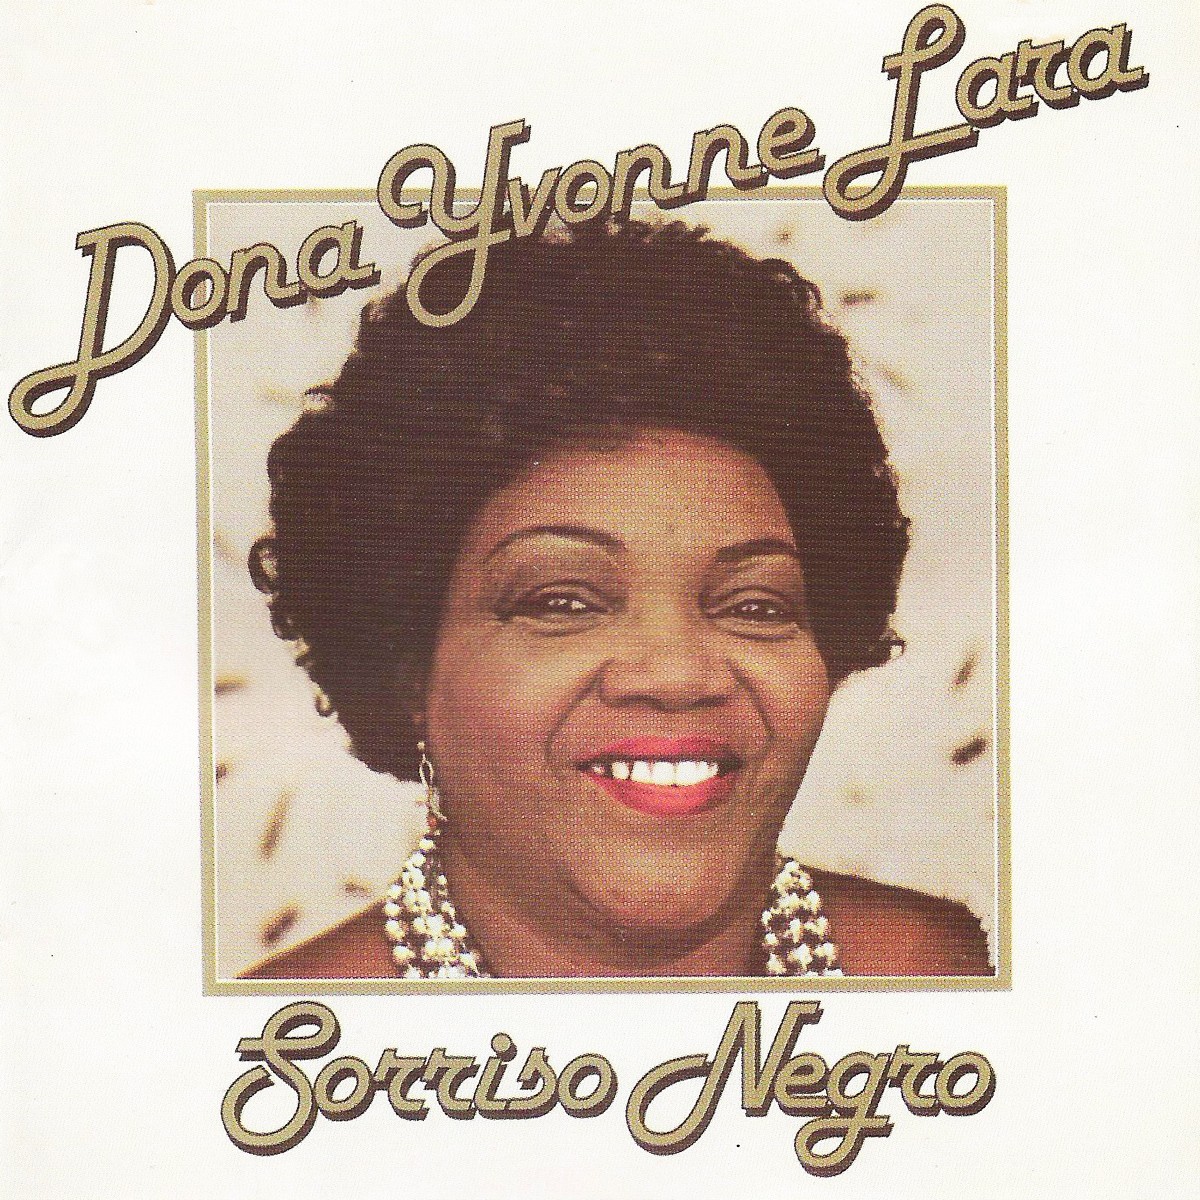 Álbum lançado por Dona Ivone Lara em 1981, ‘Sorriso negro’ é analisado sob prisma político na série ‘O livro do disco’ | Blog do Mauro Ferreira